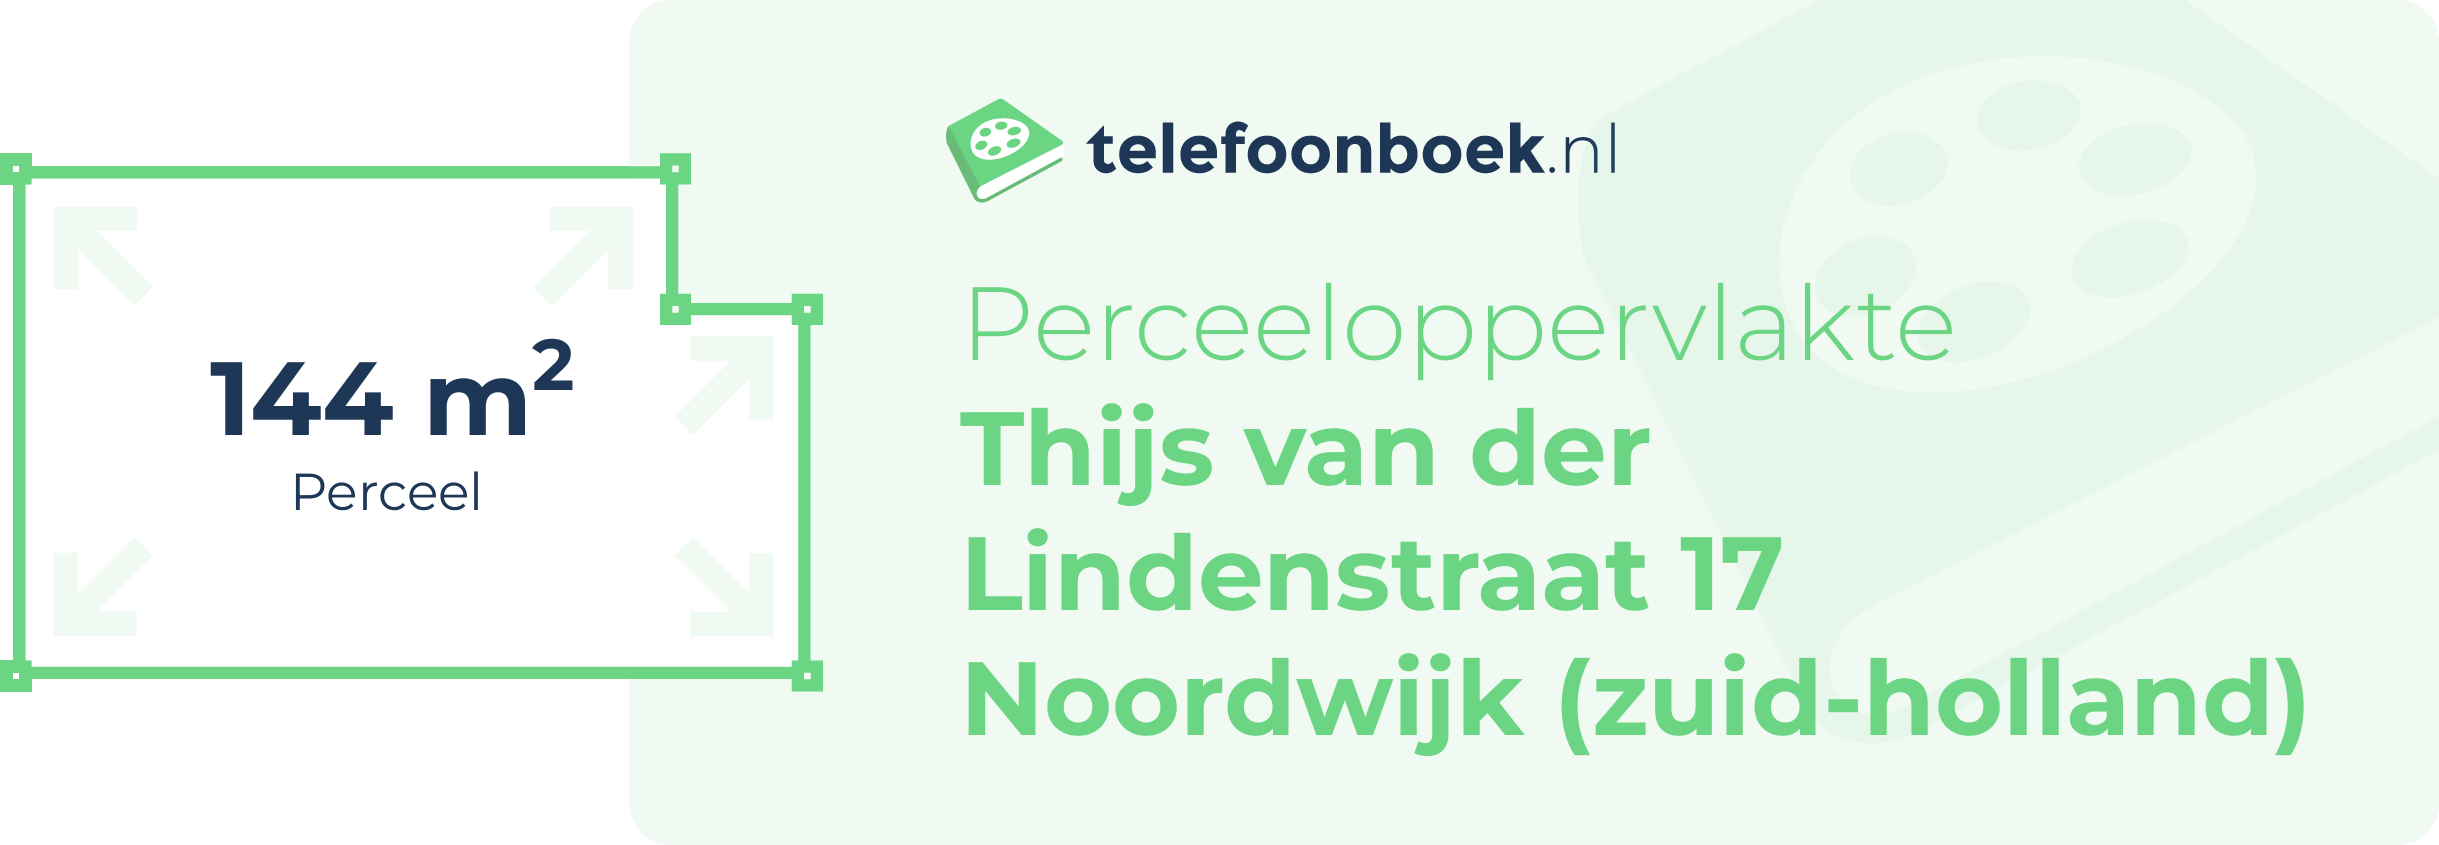 Perceeloppervlakte Thijs Van Der Lindenstraat 17 Noordwijk (Zuid-Holland)